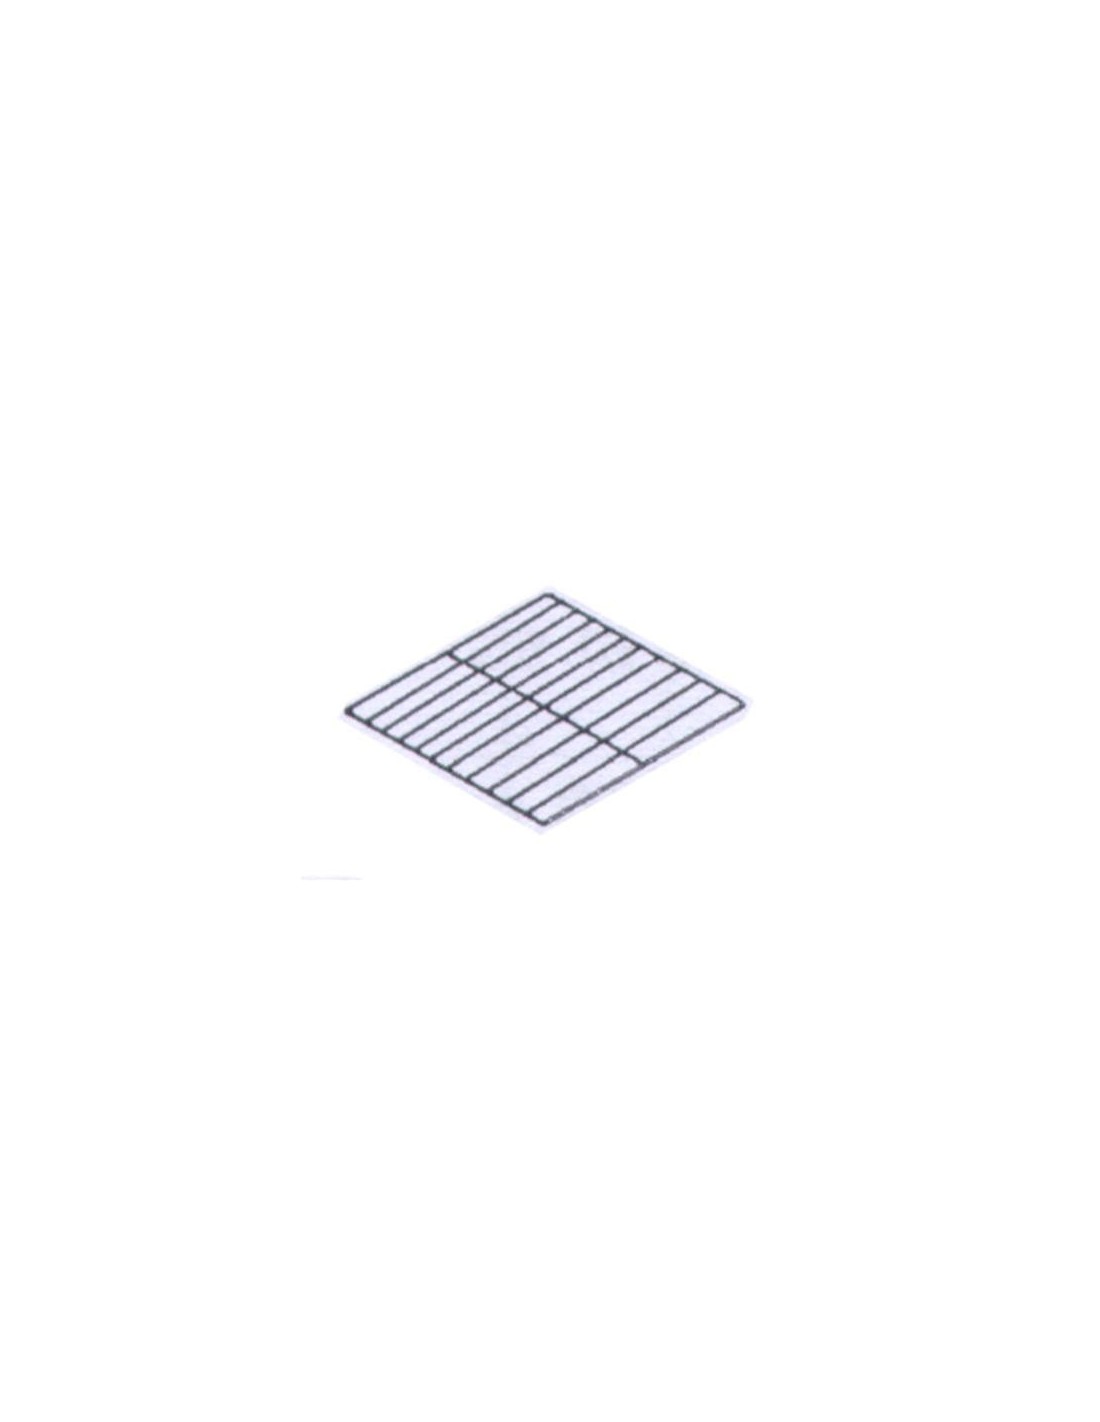 Plasticized Grid - GN 1/1 (CM 53 x 32.5)